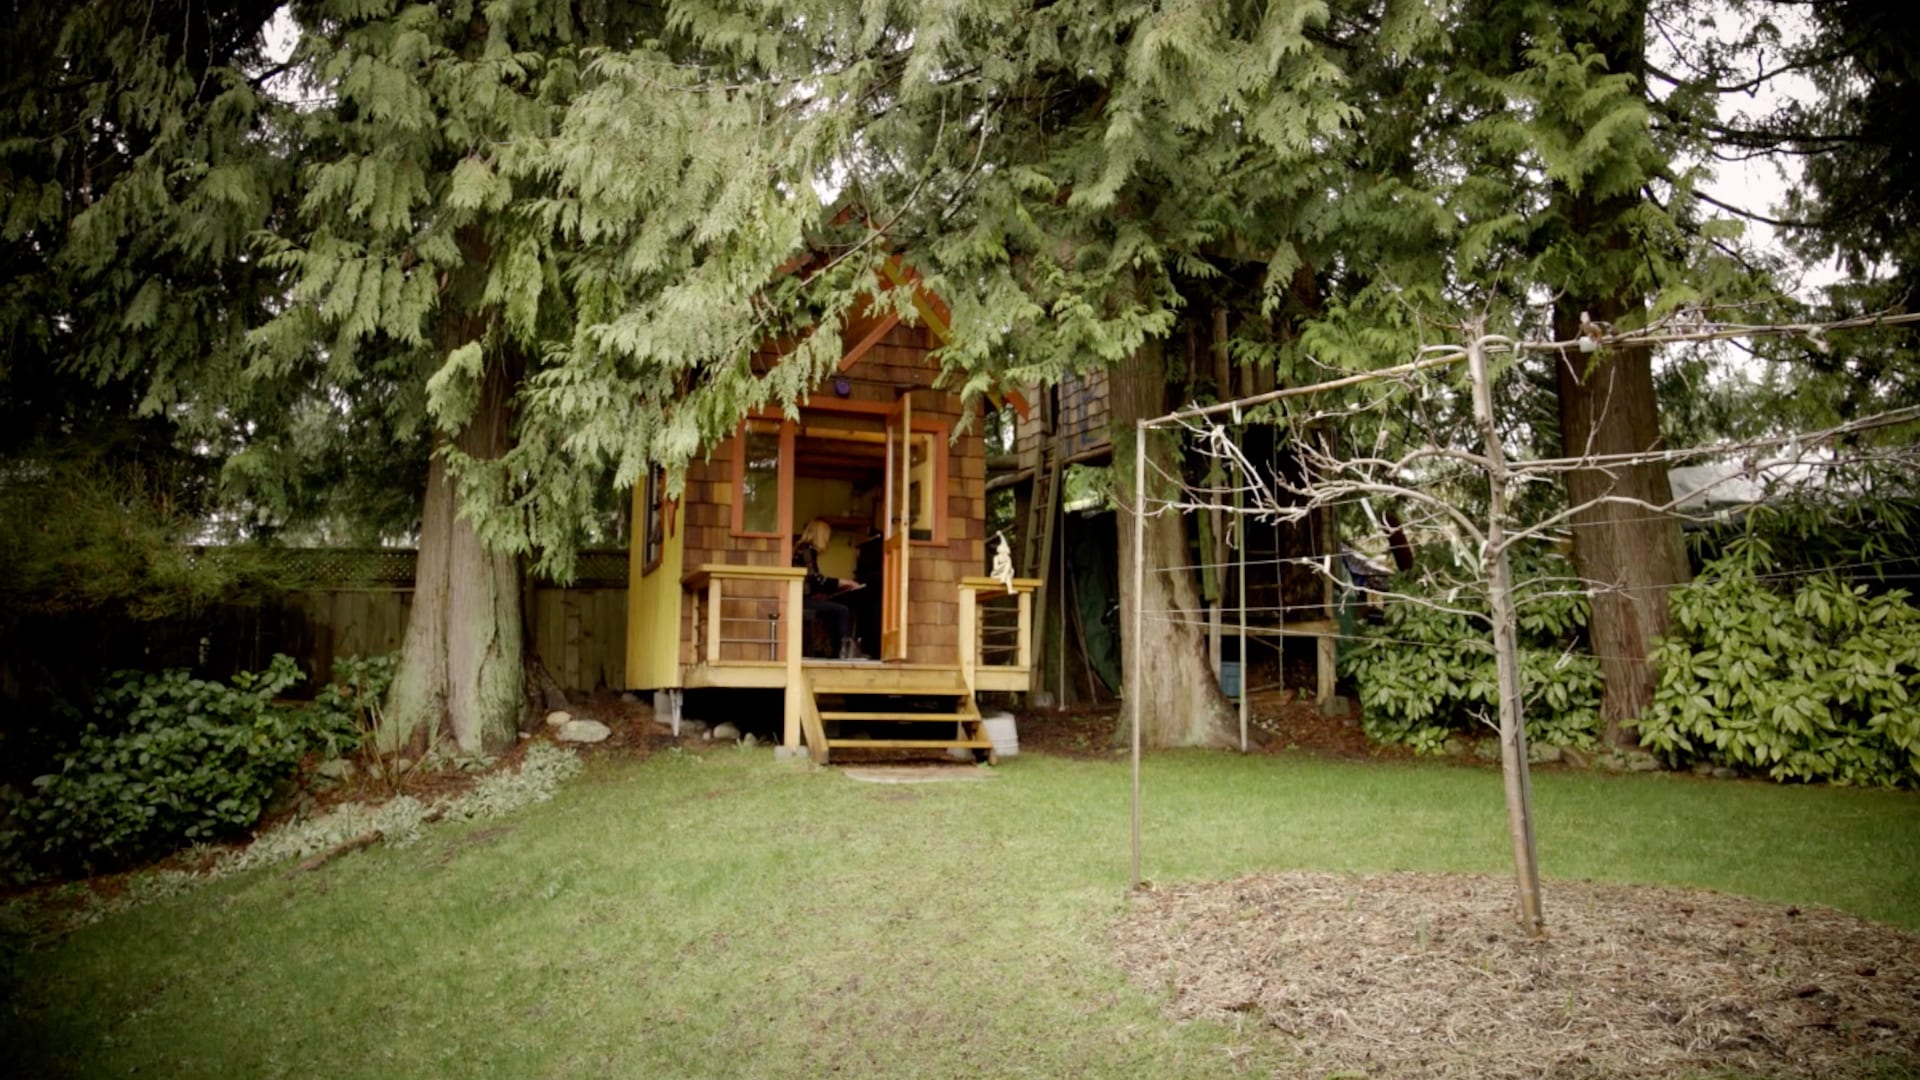 Sous des arbres conifères, une petite maison de bois dans laquelle on y voit la musicienne Anna Lumière assise à son piano.